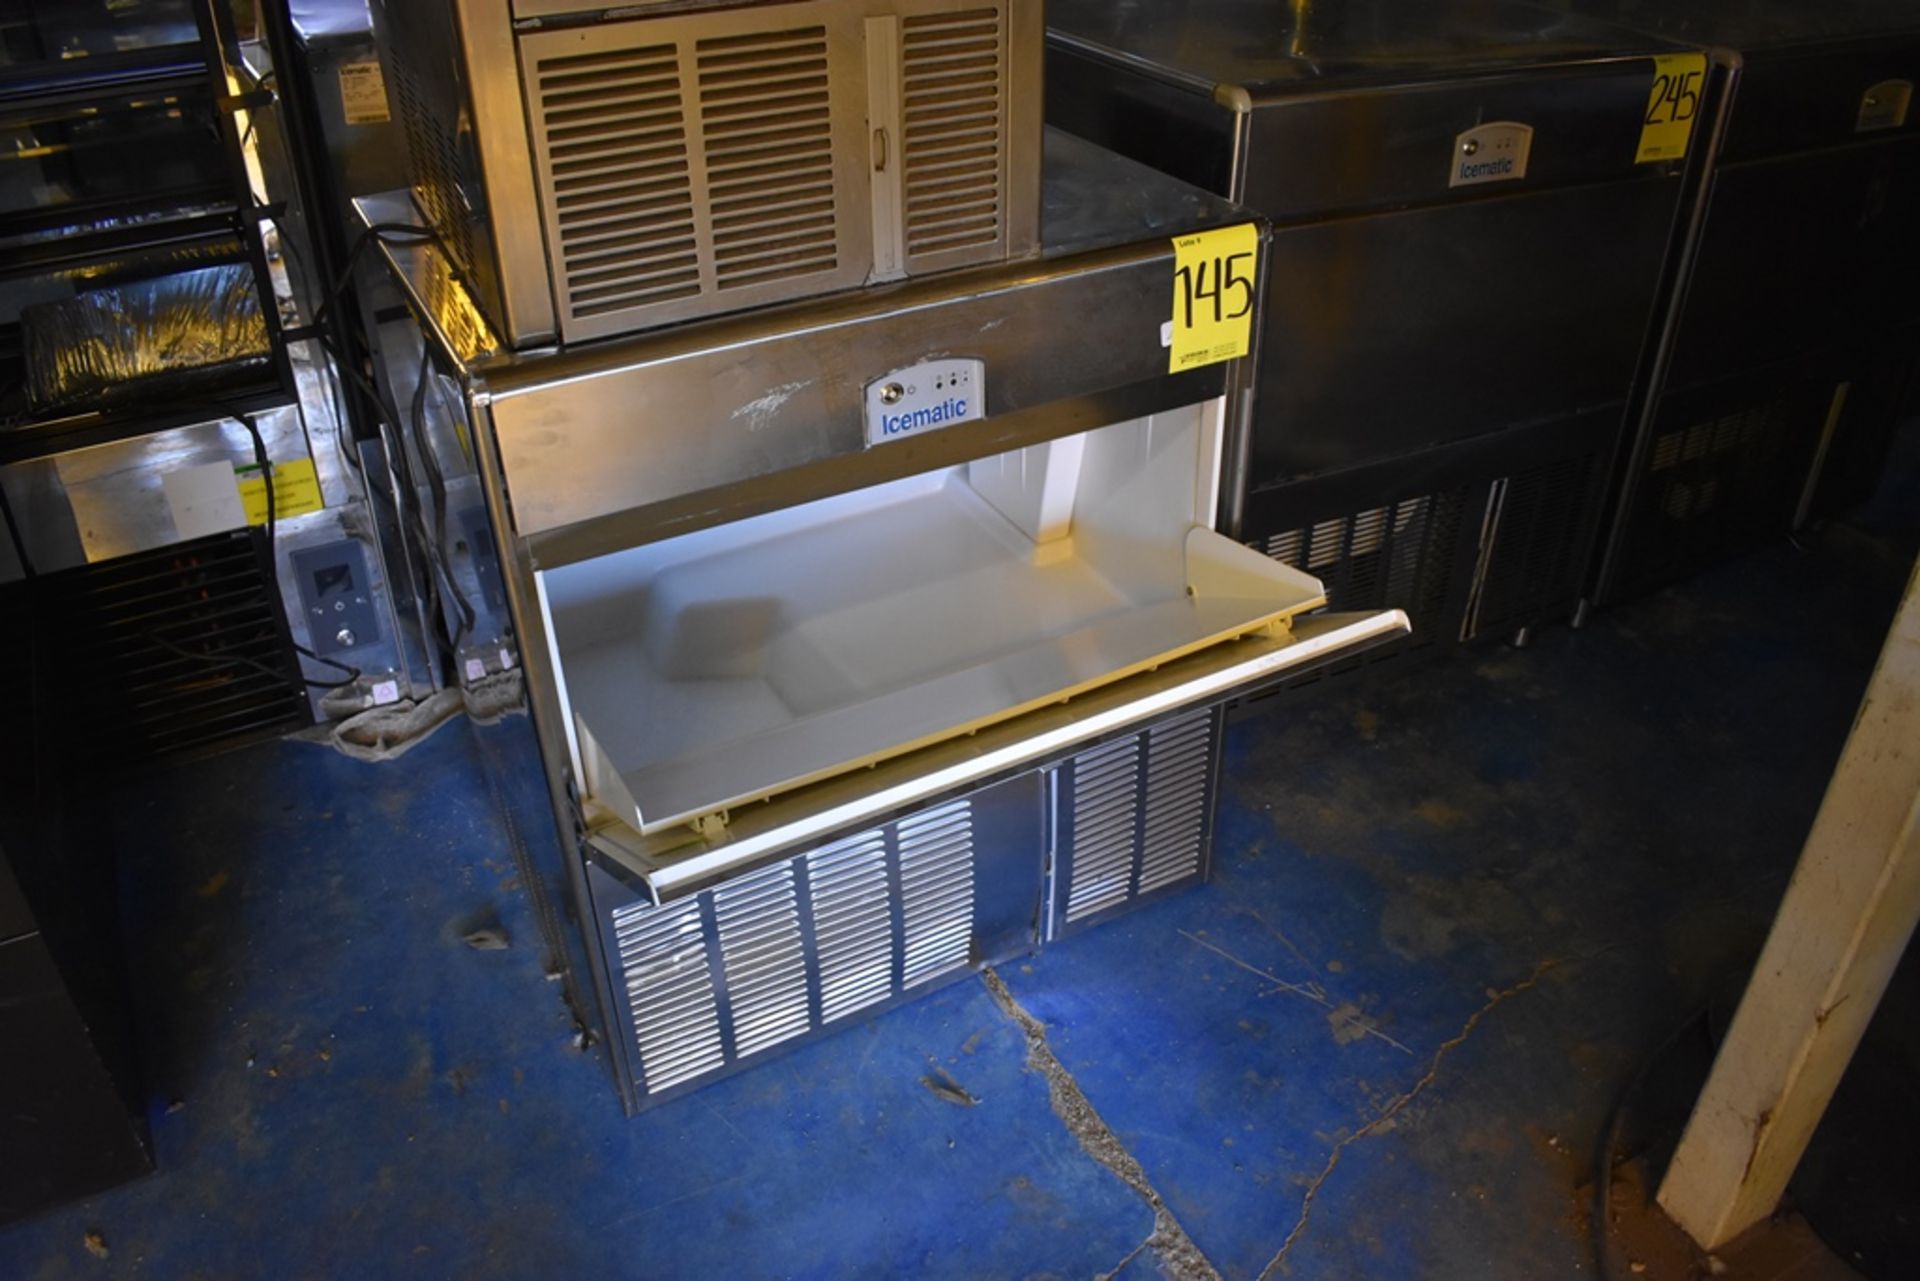 Máquina fabricadora de hielo en acero inoxidable marca Icematic, Modelo: E90 A IX 220/60/1 - Image 6 of 9